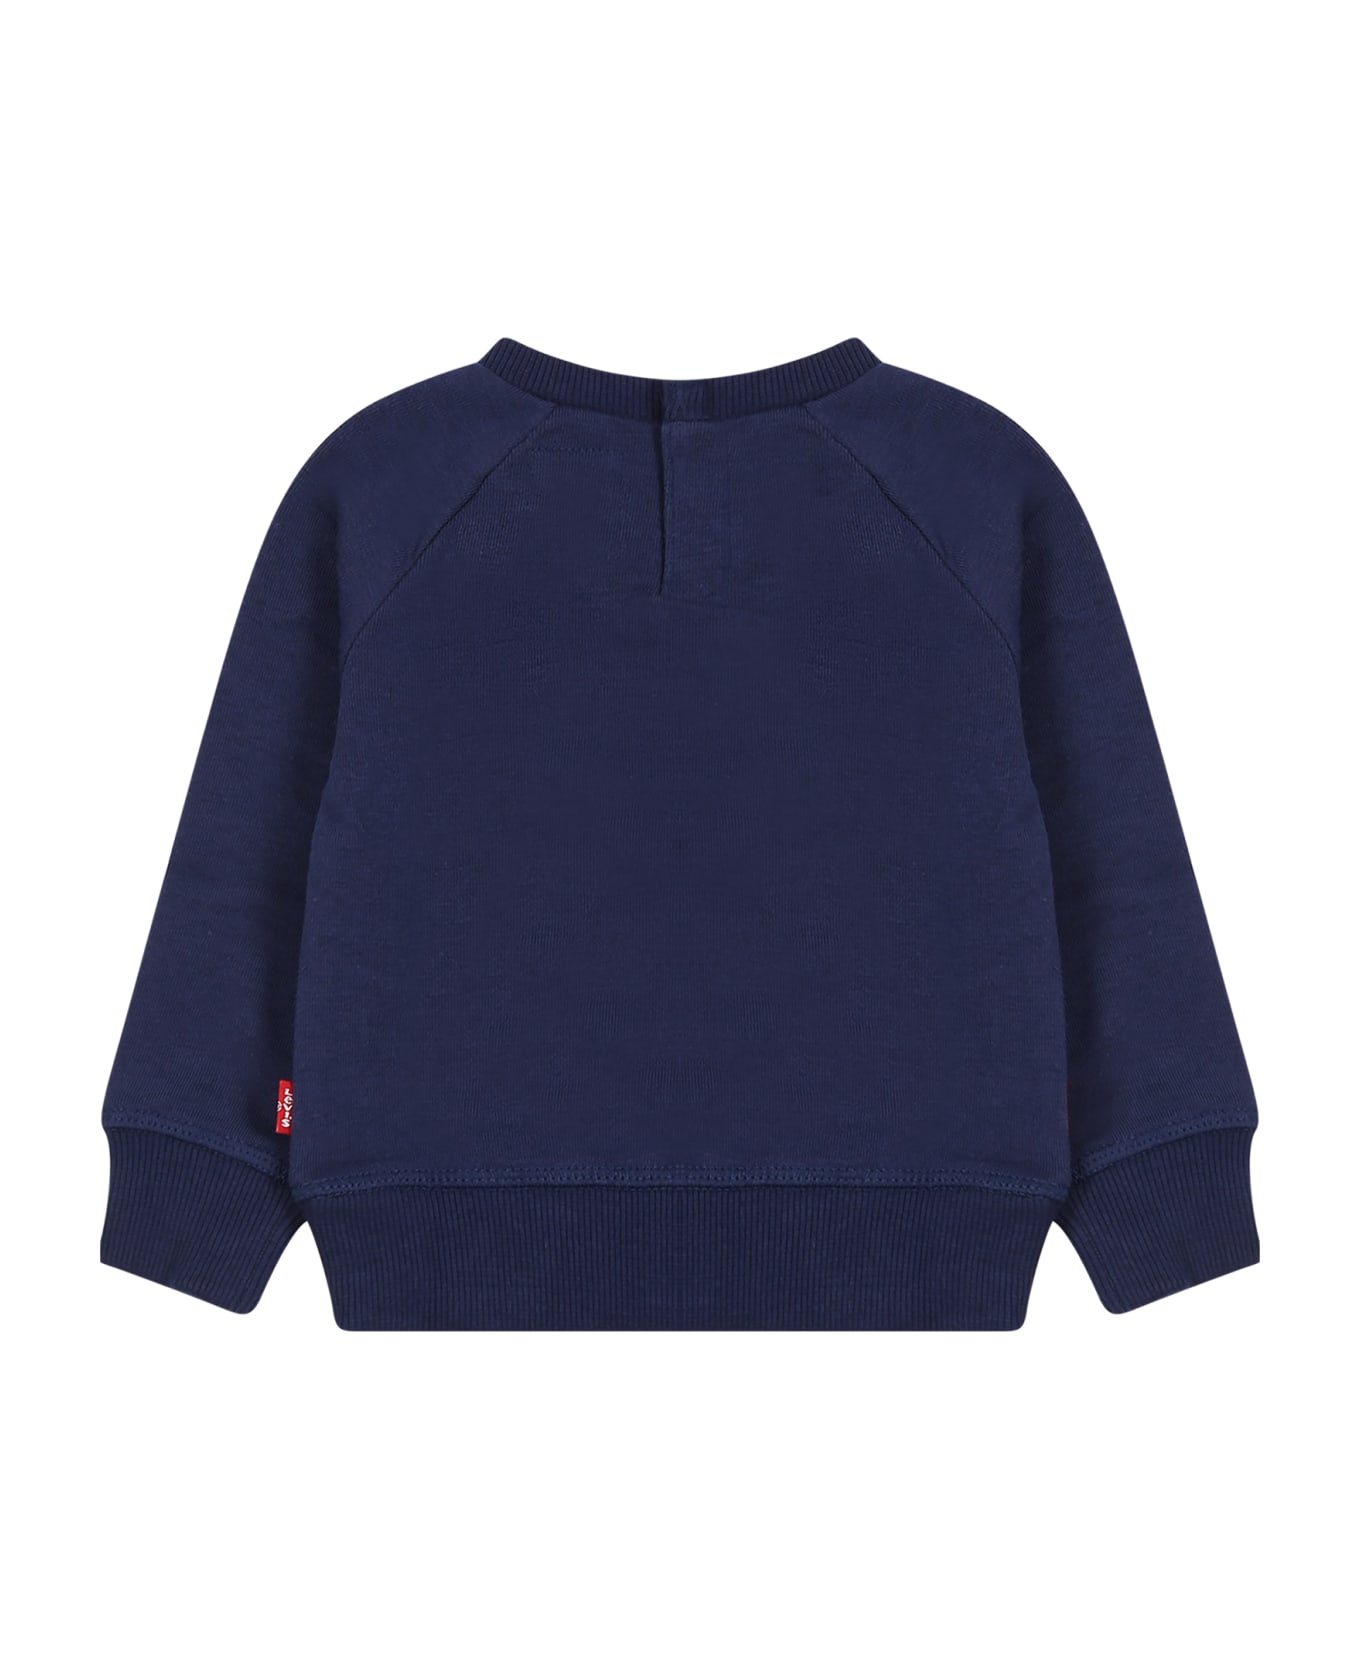 Levi's Blue Sweatshirt For Baby Girl With Logo - Blue ニットウェア＆スウェットシャツ